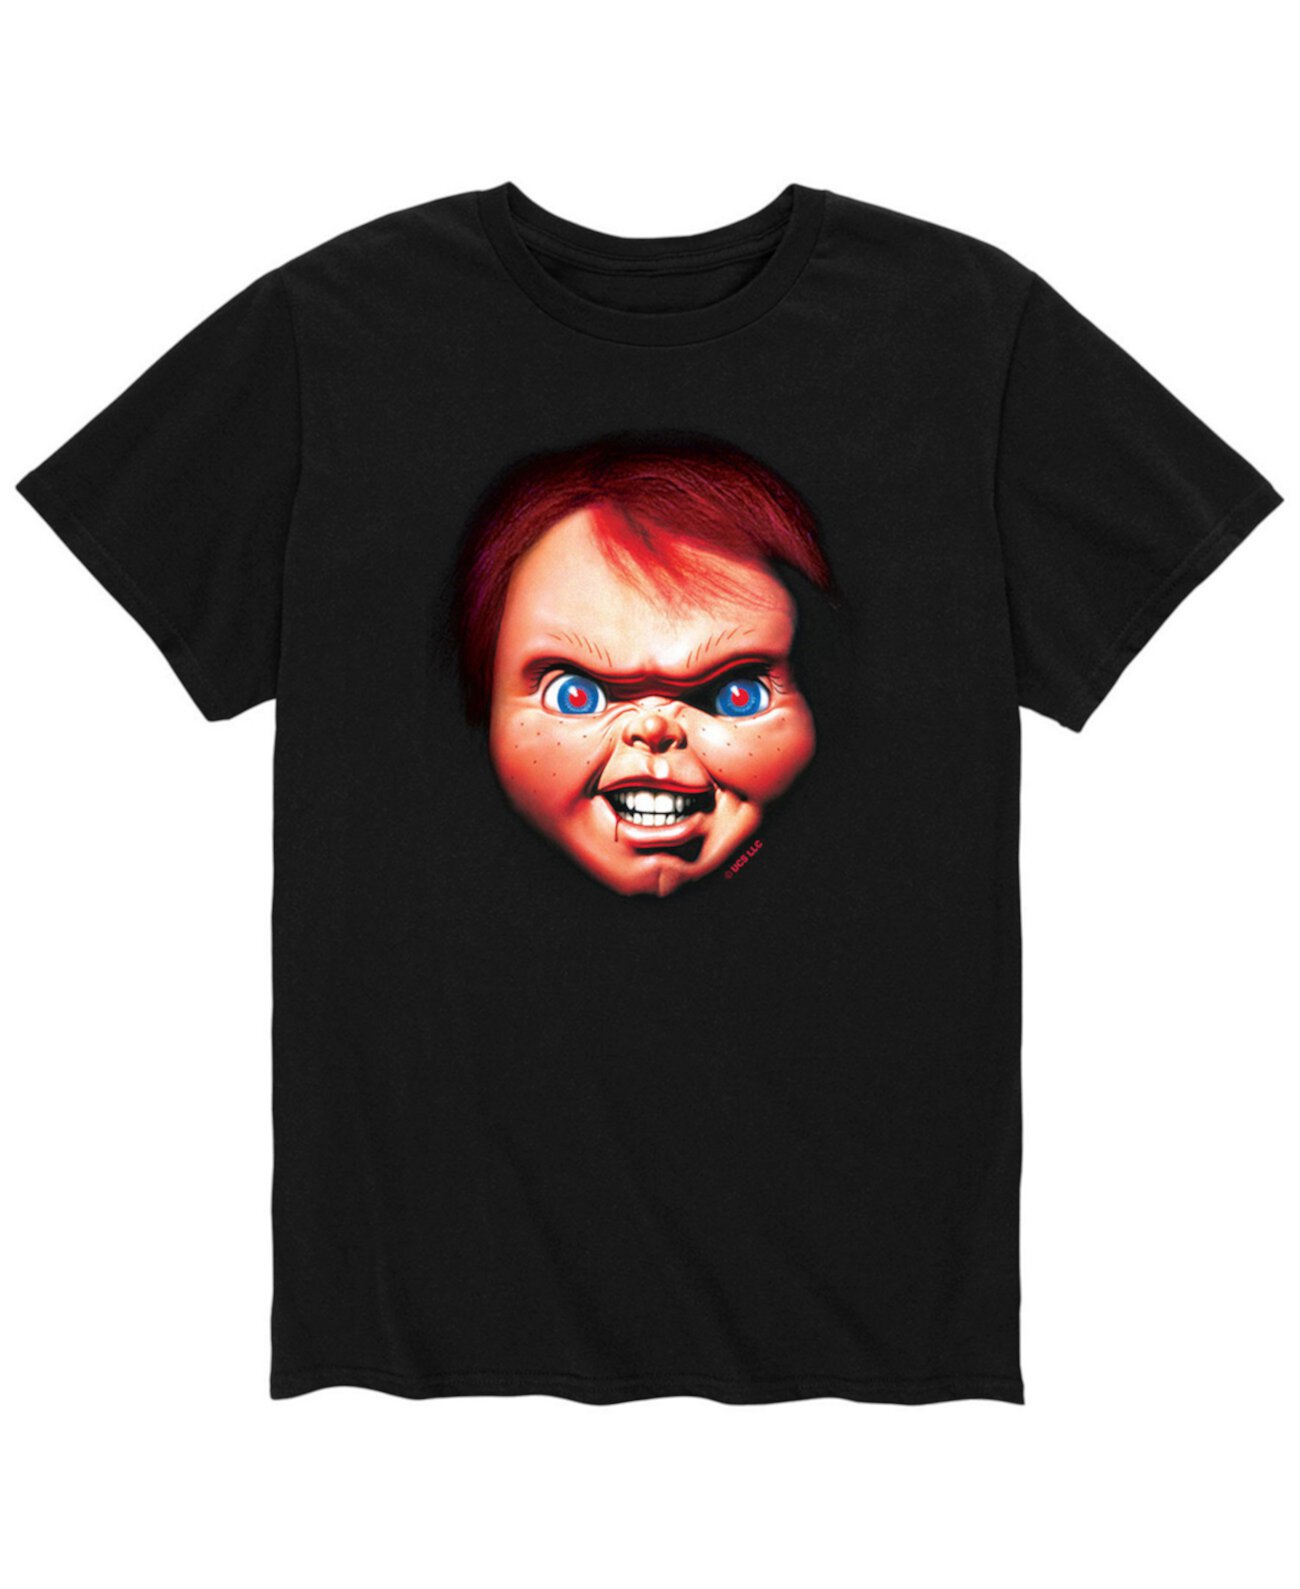 Мужская футболка с изображением лица Чаки AIRWAVES